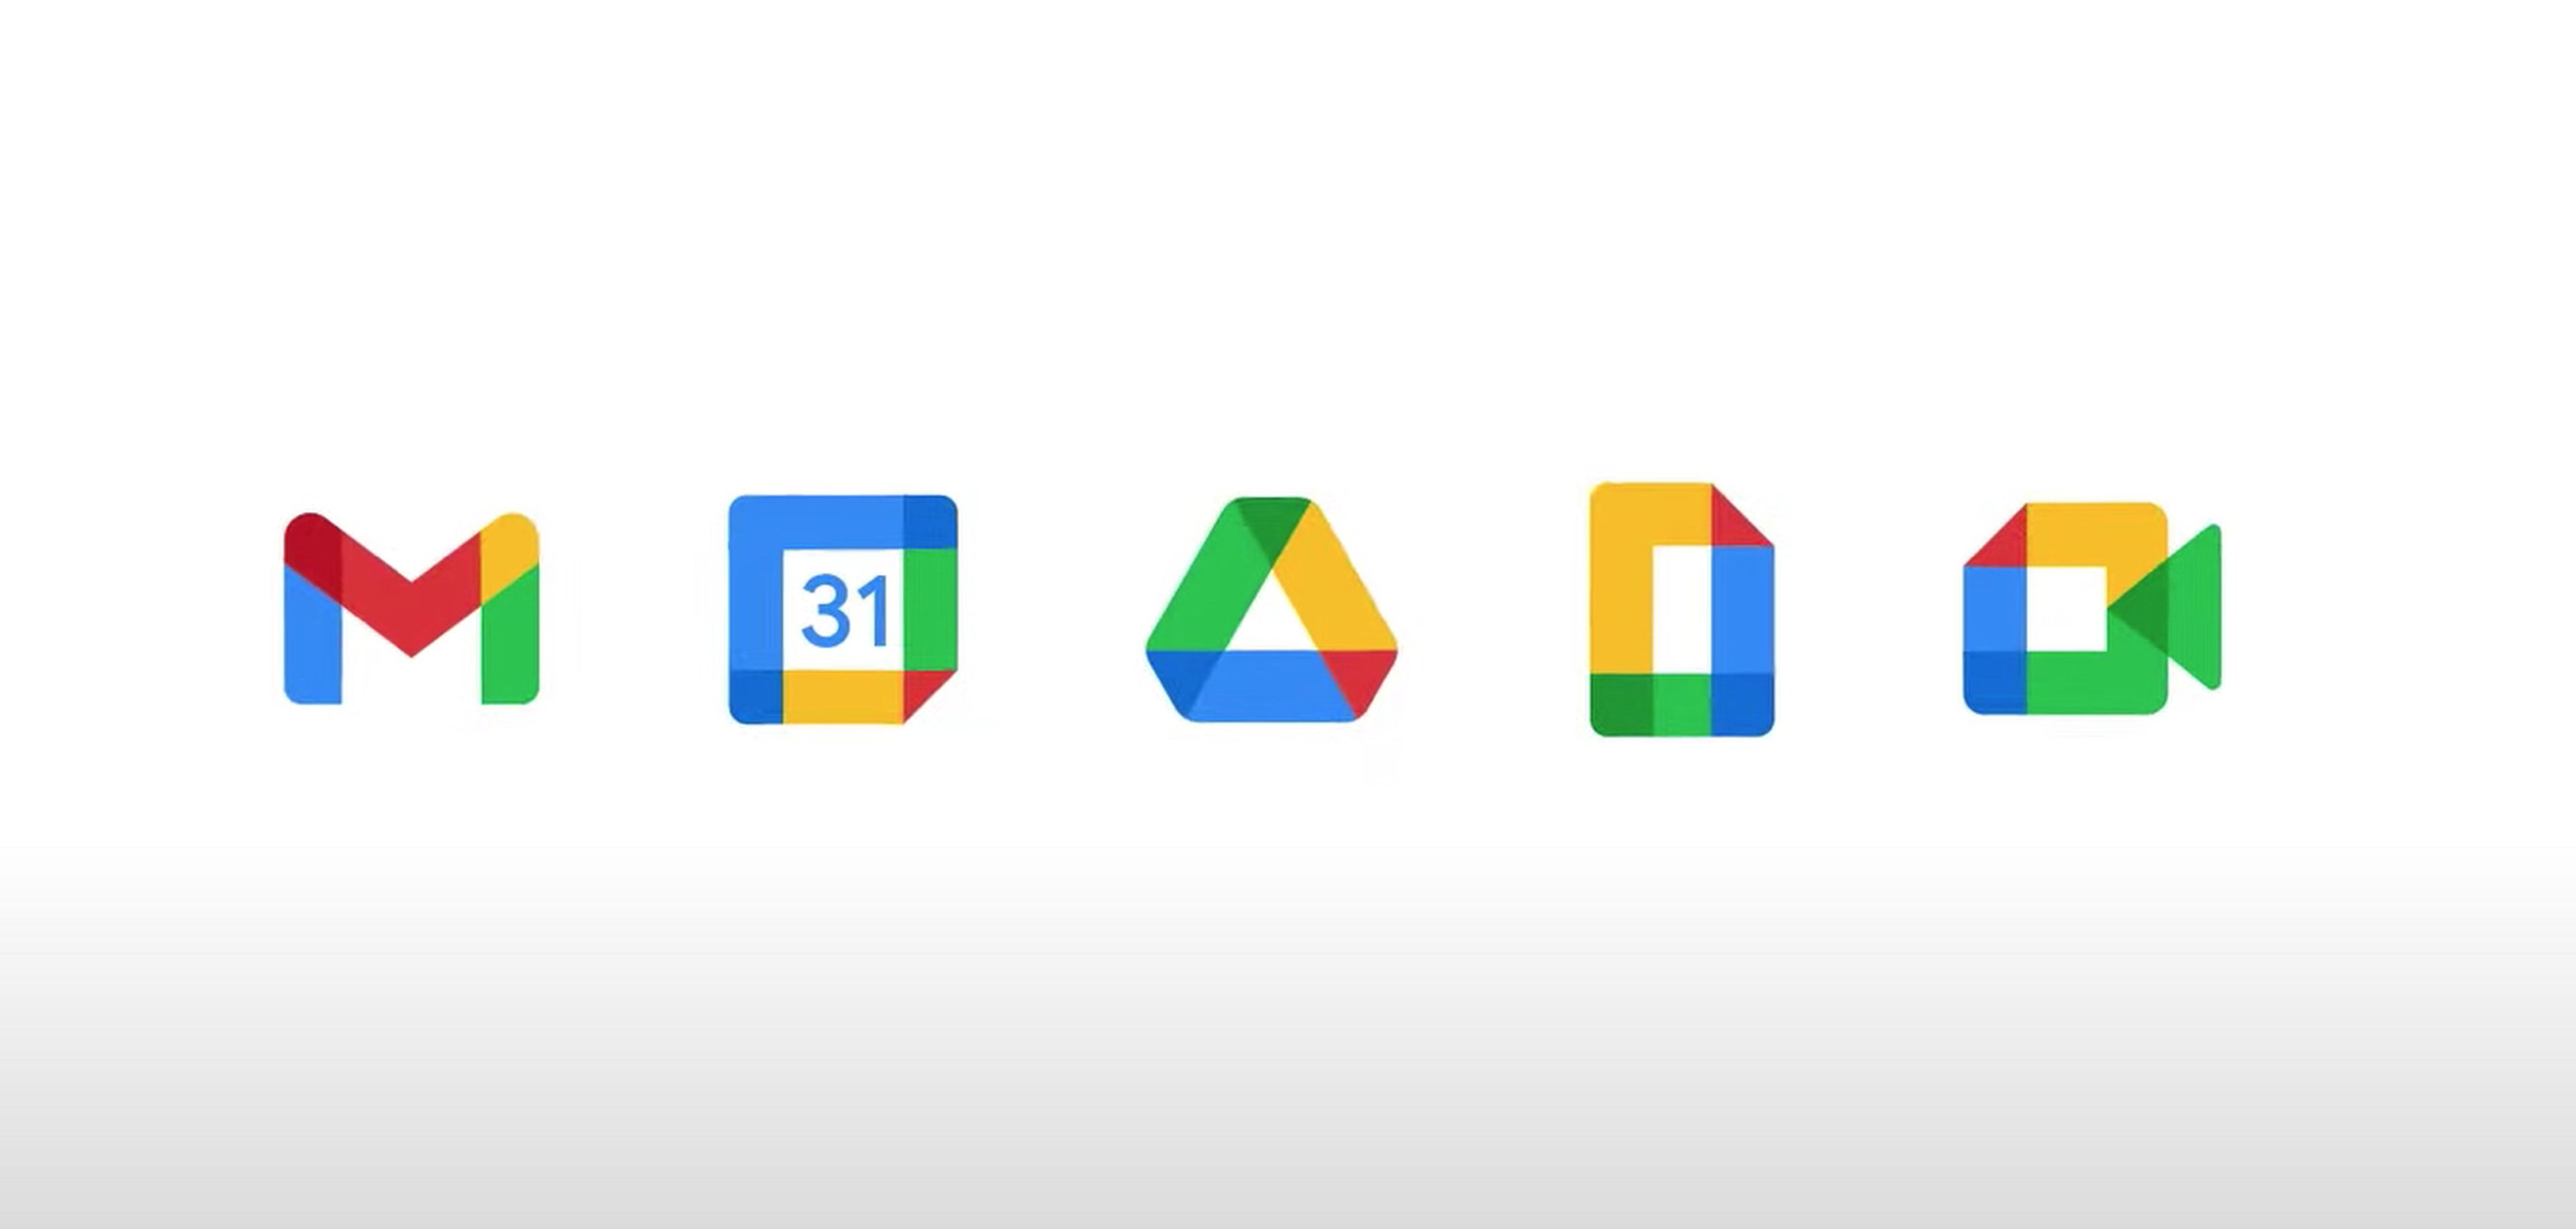 Por qué ha cambiado el logo de Gmail? | Computer Hoy